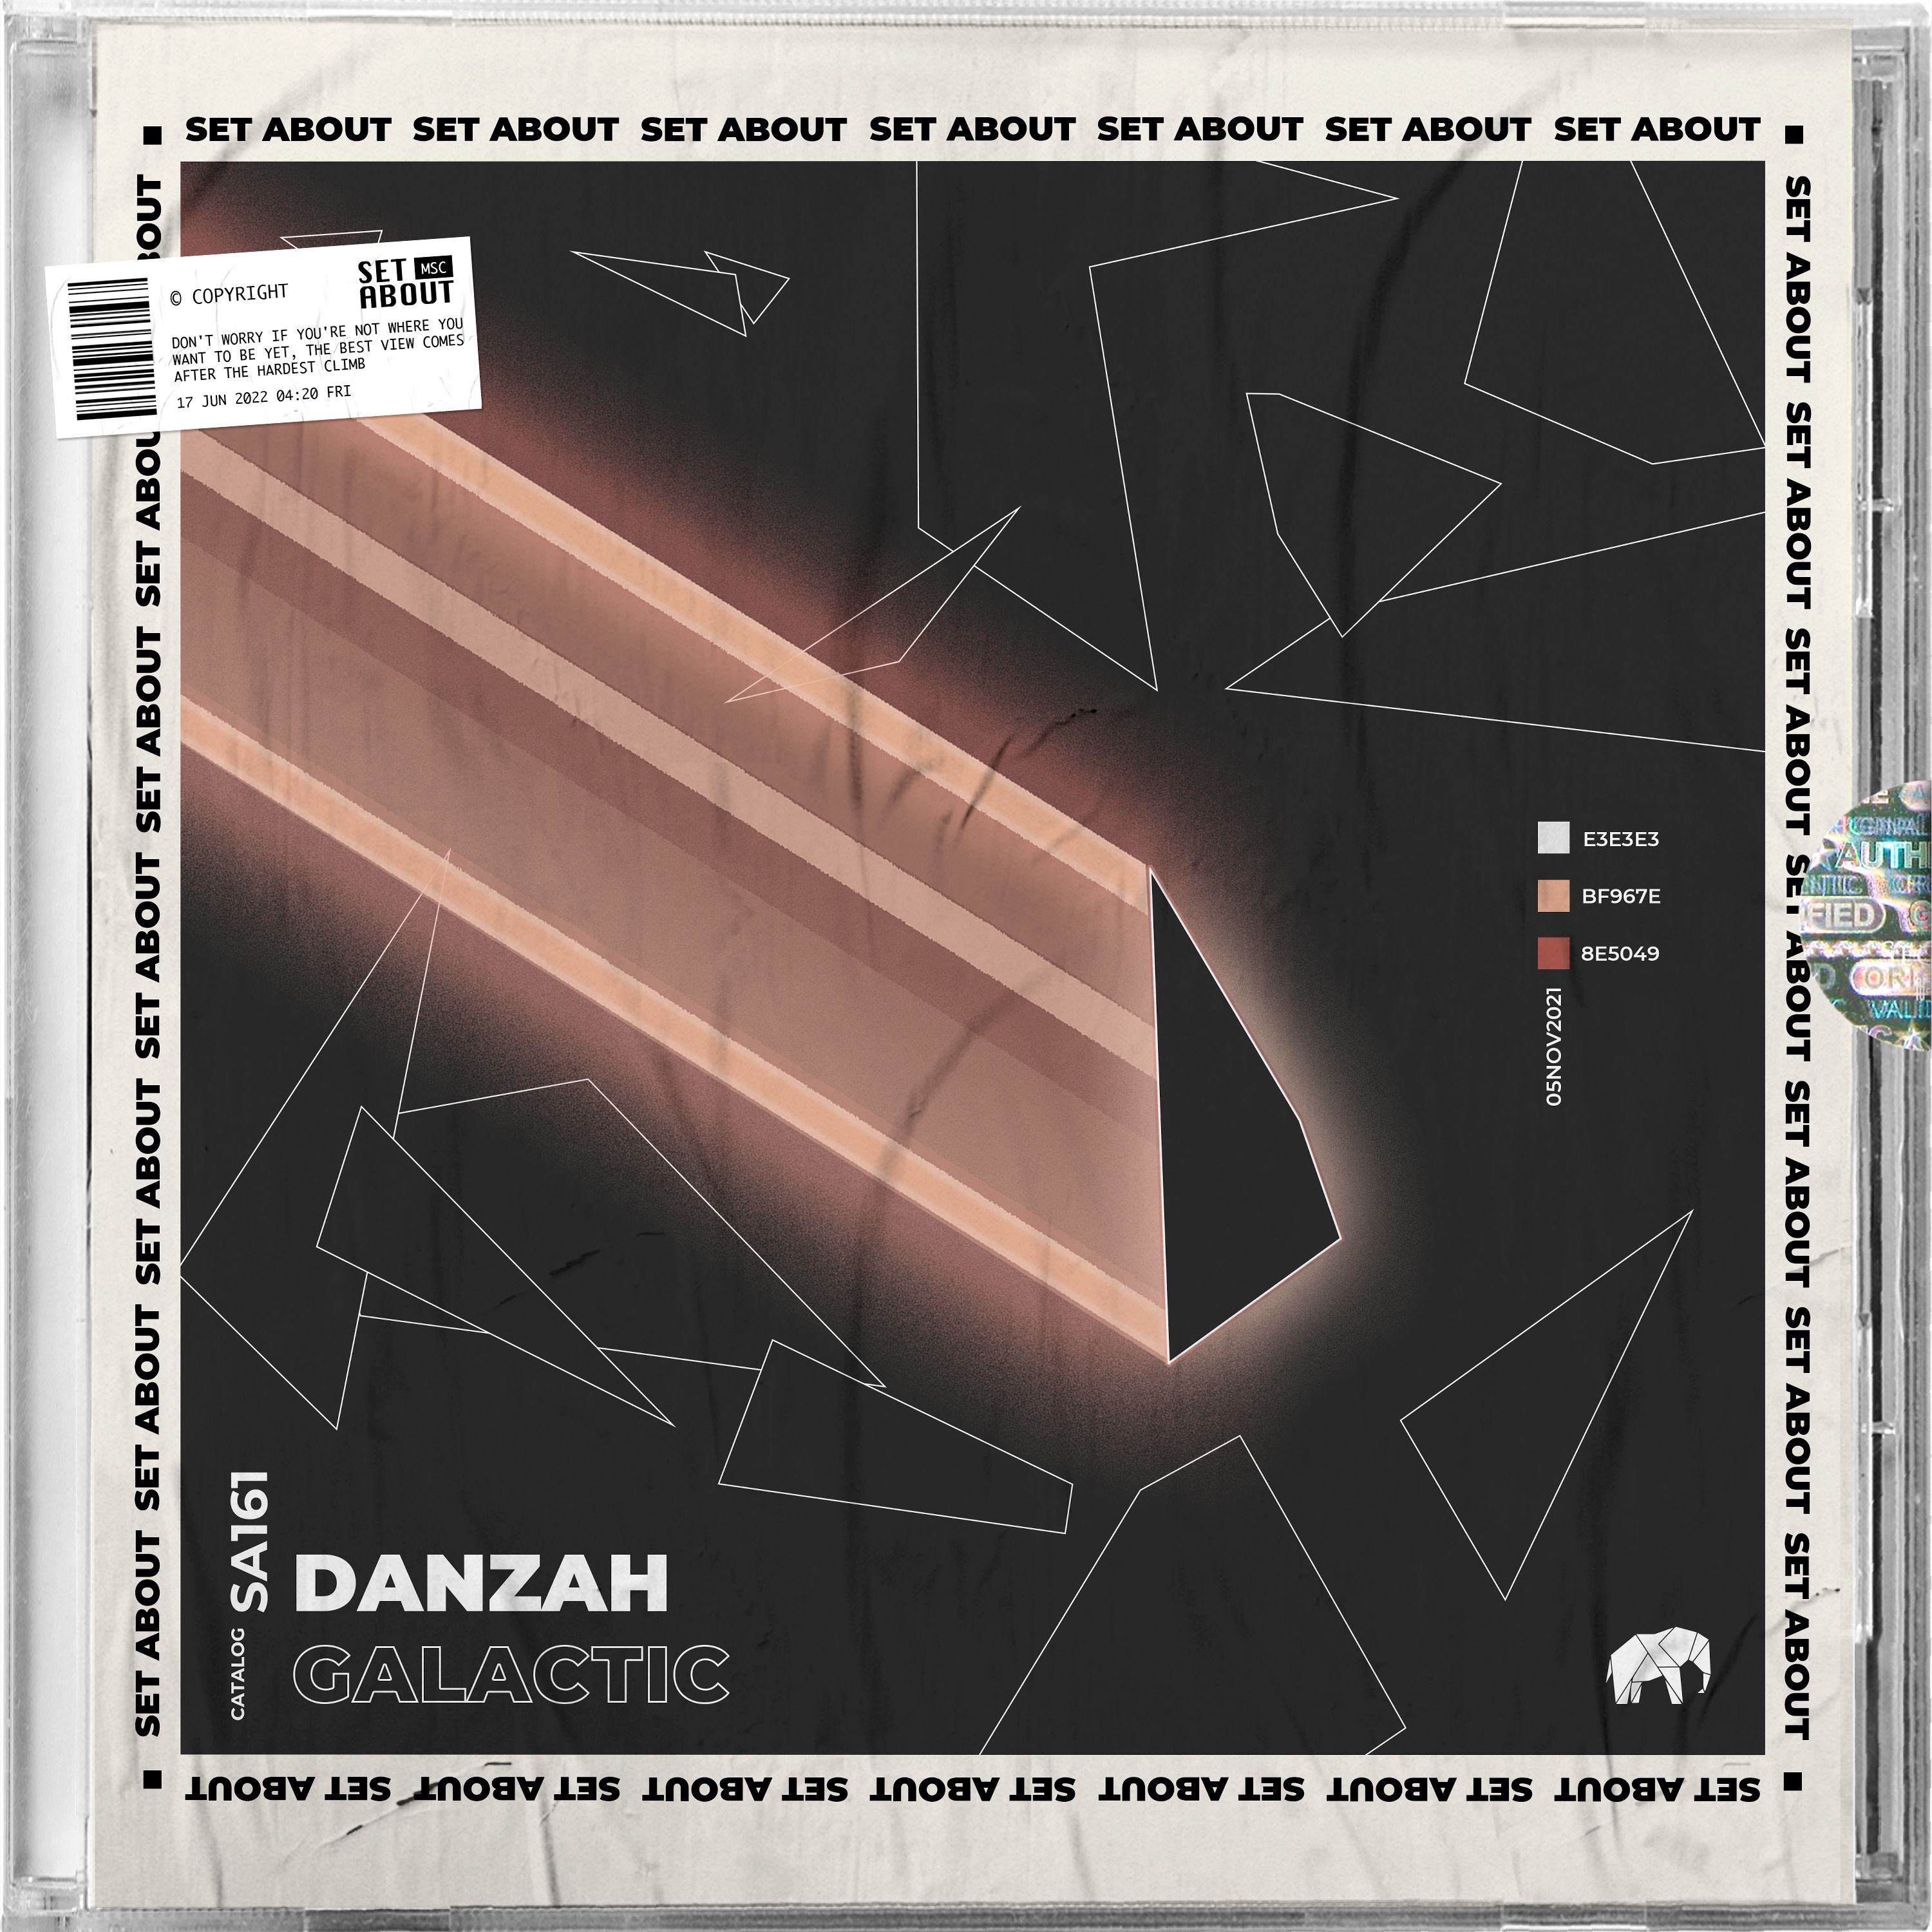 Scaricamento PREMIERE: DANZAH - Galactic (Original Mix) [Set About]